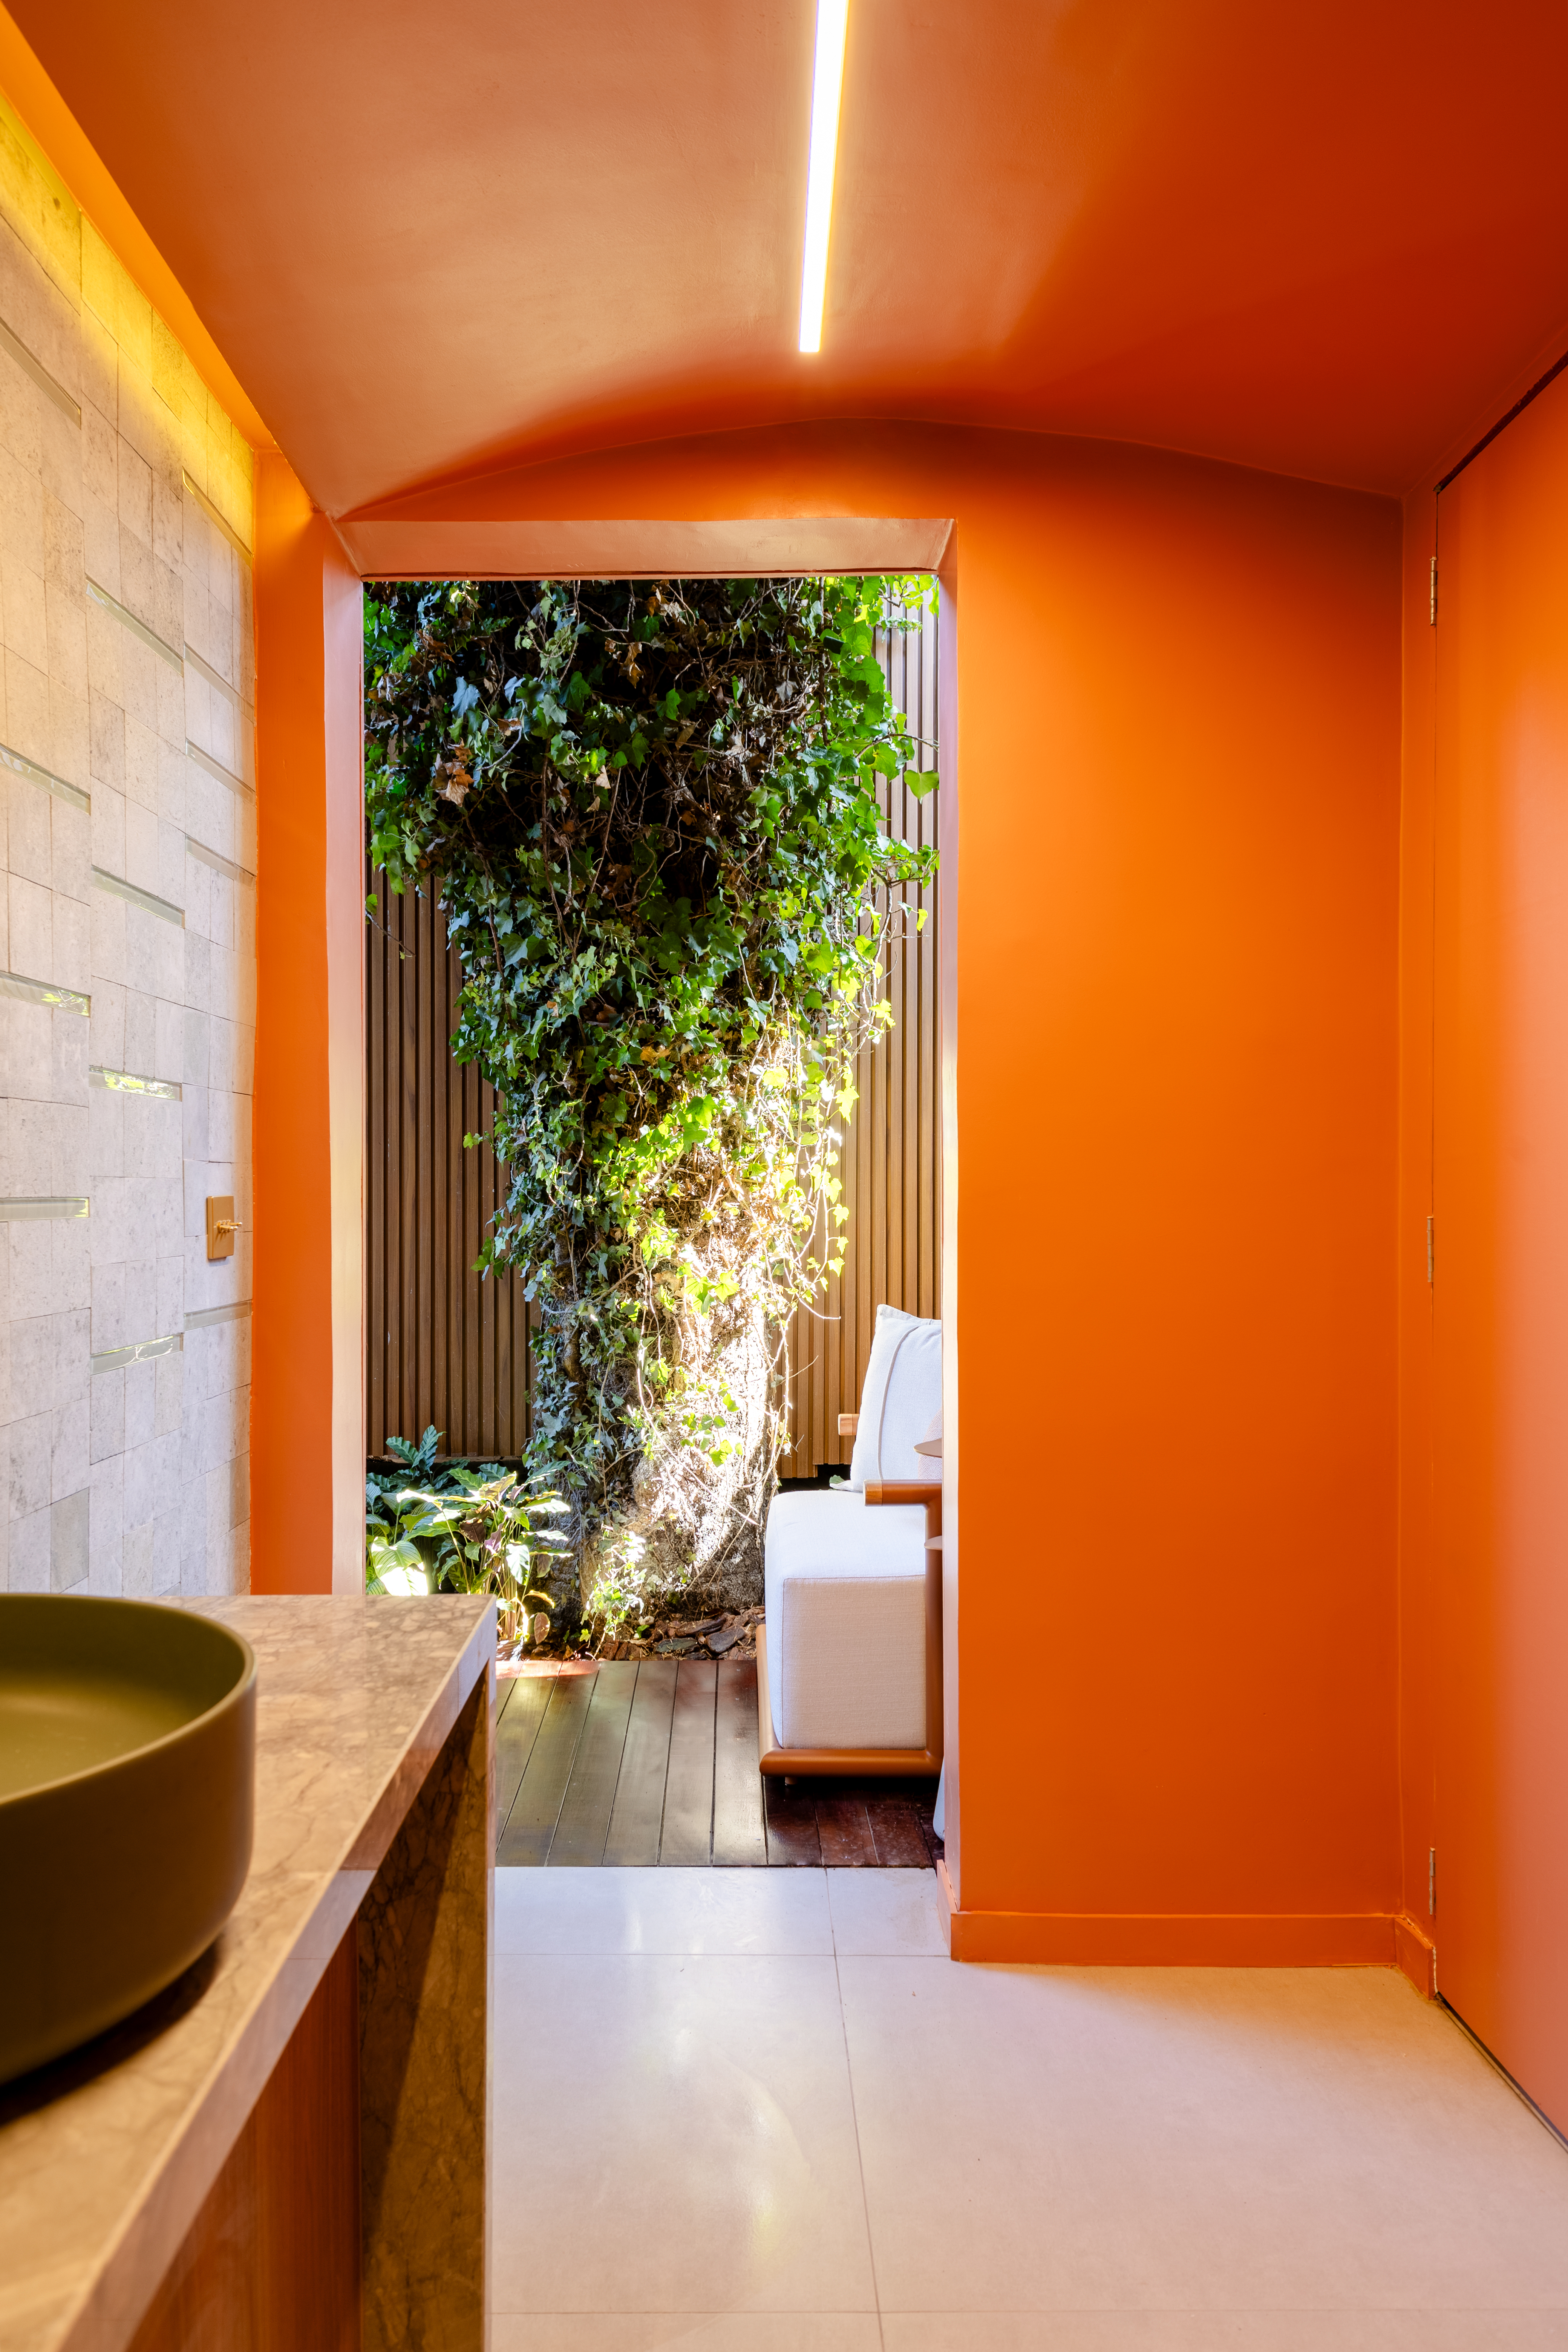 CASACOR Paraná: ambiente brinca com texturas, cores e sensações. Projeto de Fernanda Gonçalves. Na foto, banheiro com parede laranja